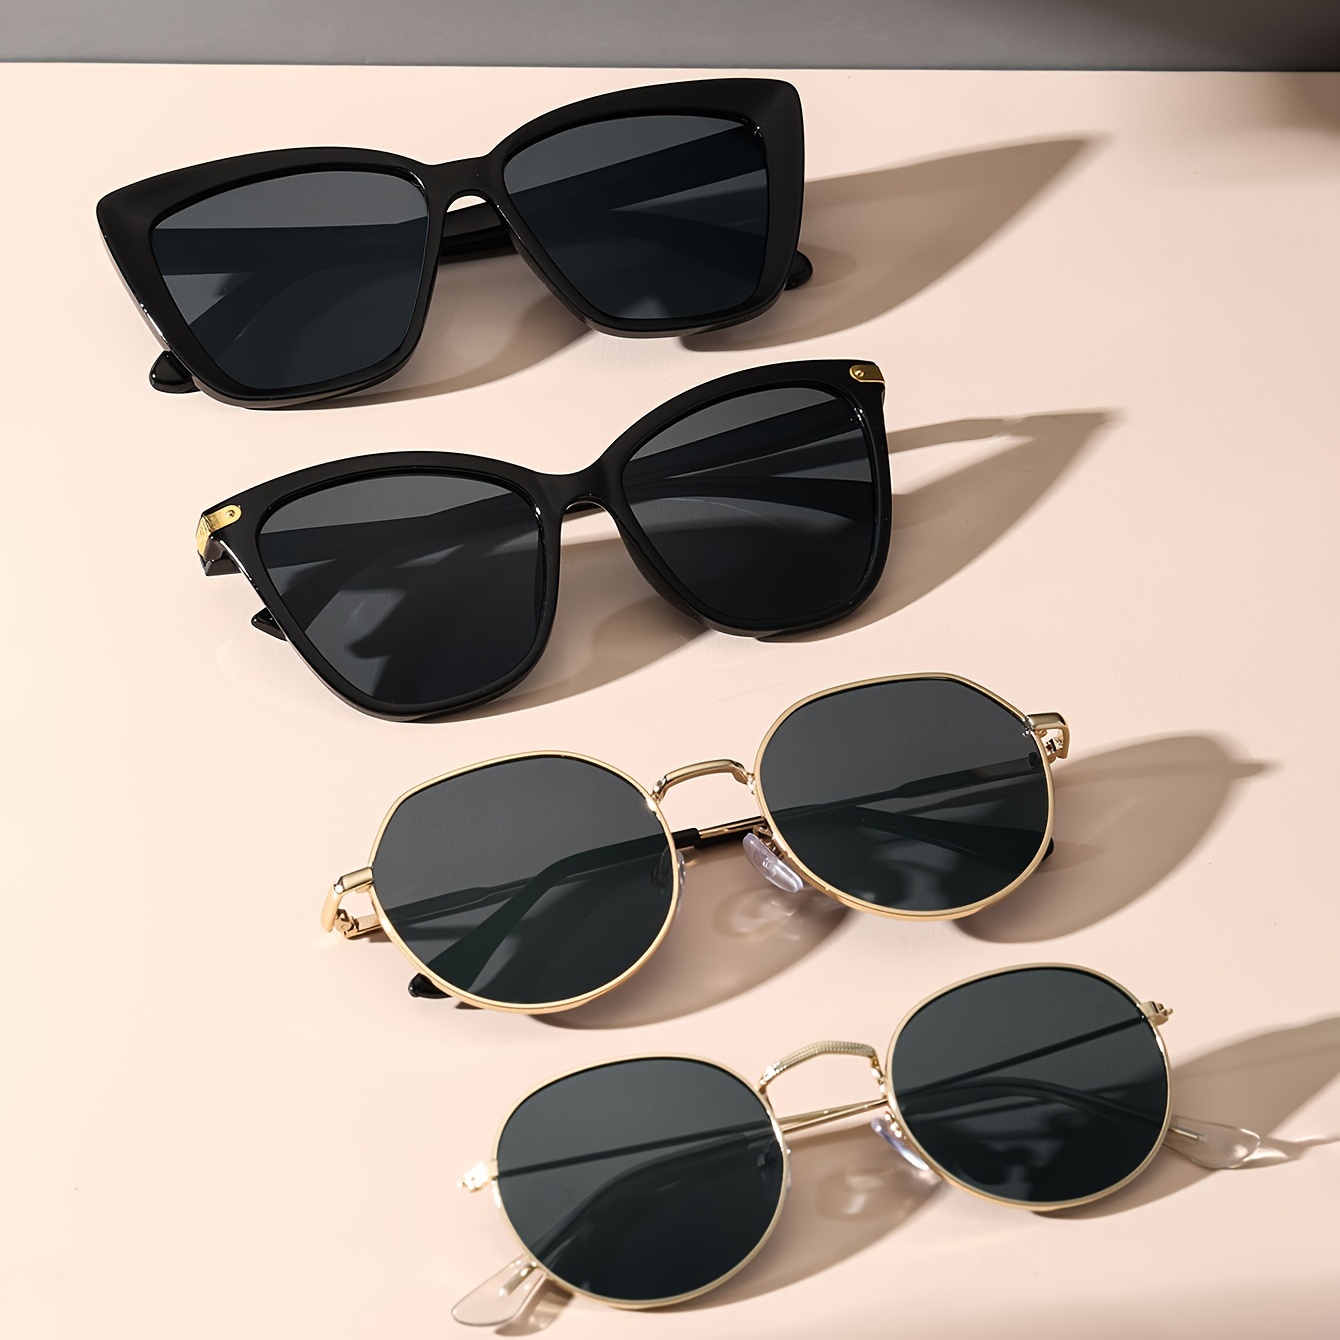 

4pcs Classic Frame Fashion Glasses Fashion Fashion Glasses For Women Men Anti Glare Sun Shades Glasses For Driving Beach Travel